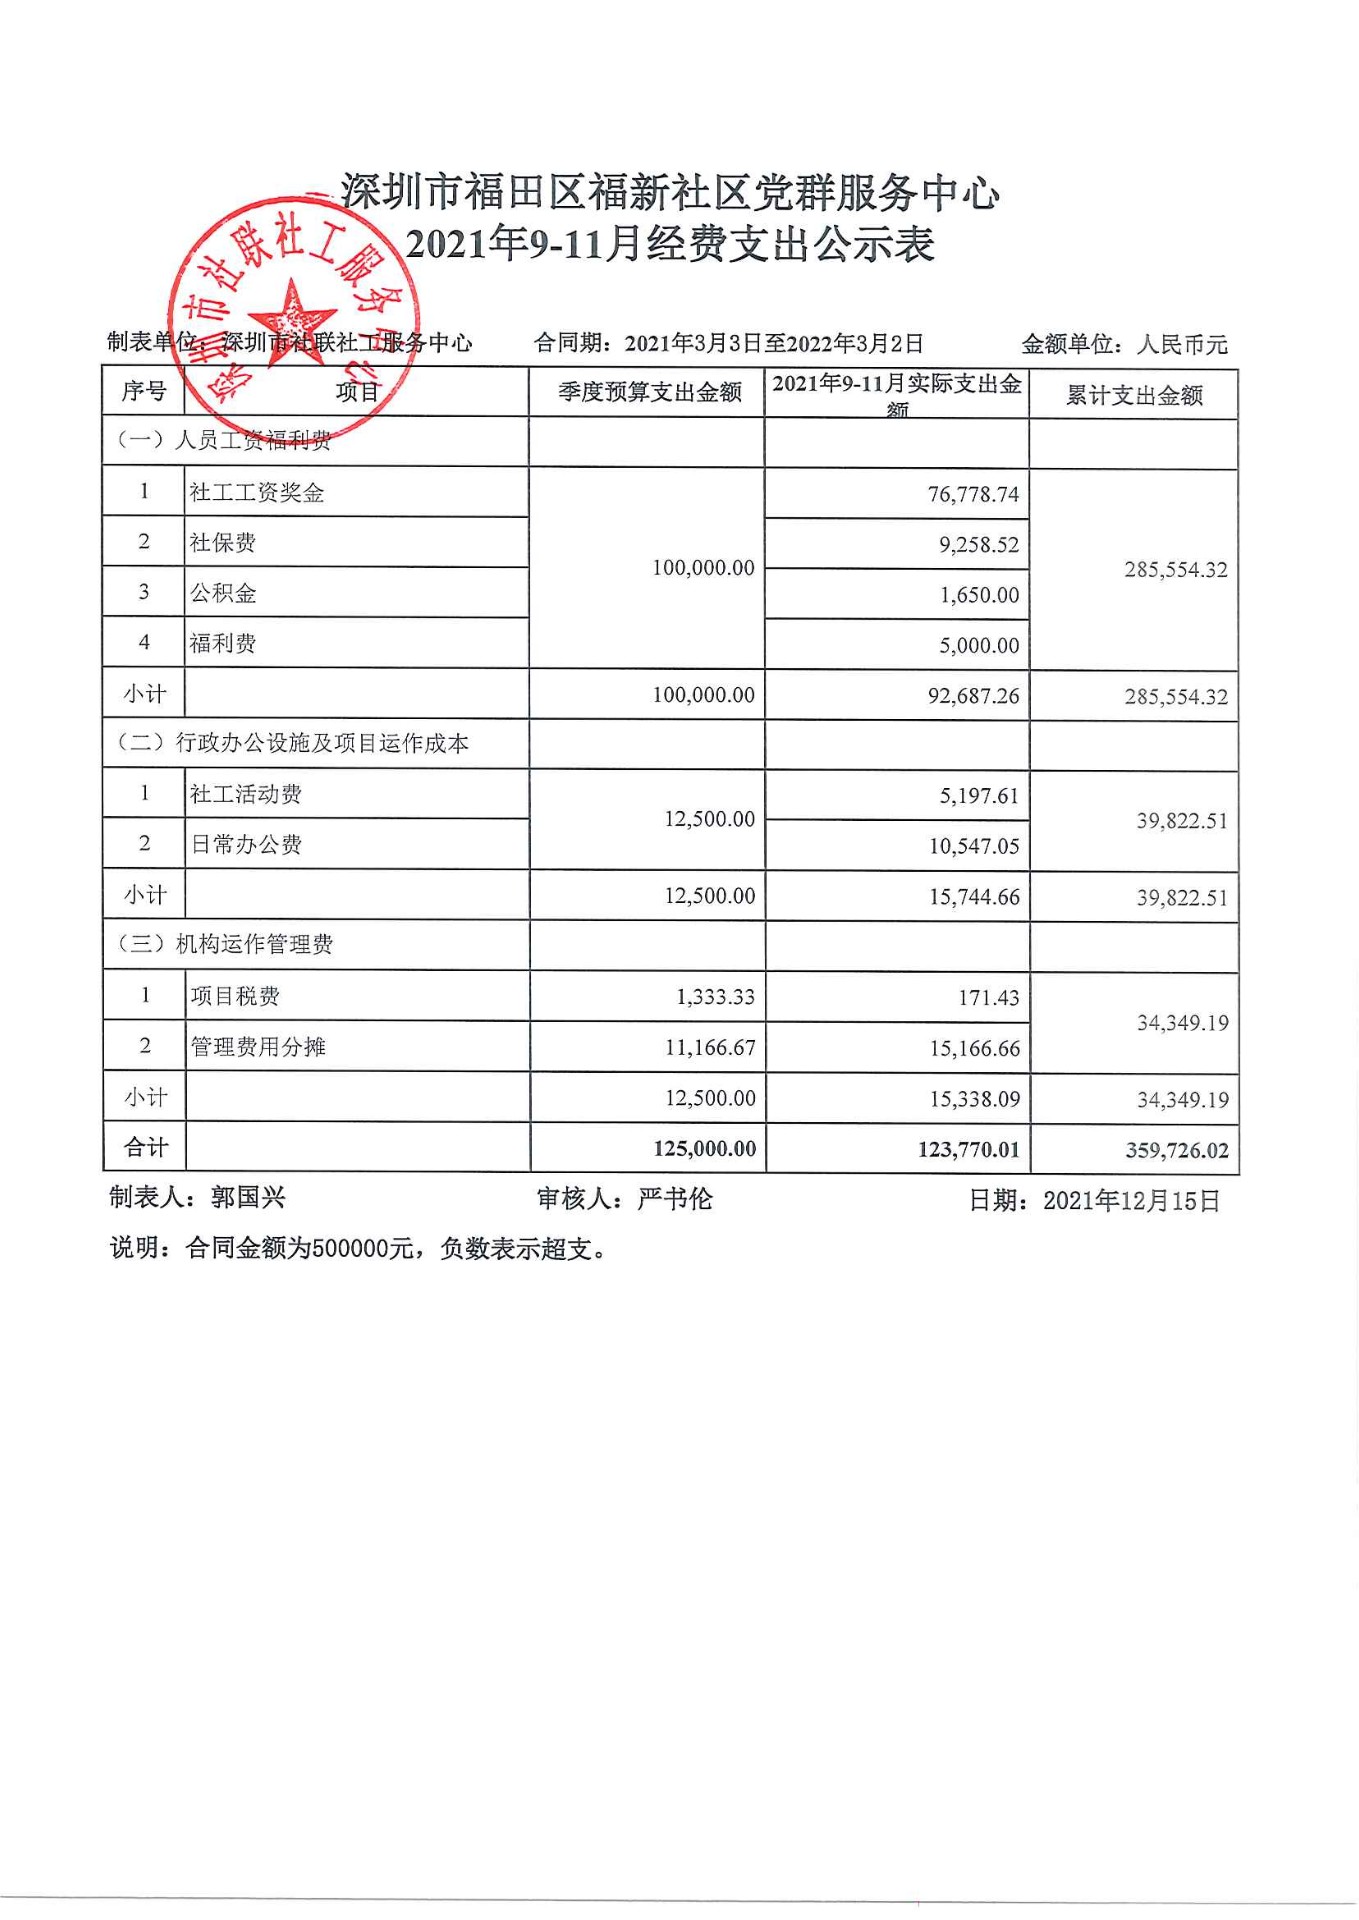 福新社区2021年9-11月财务公示表